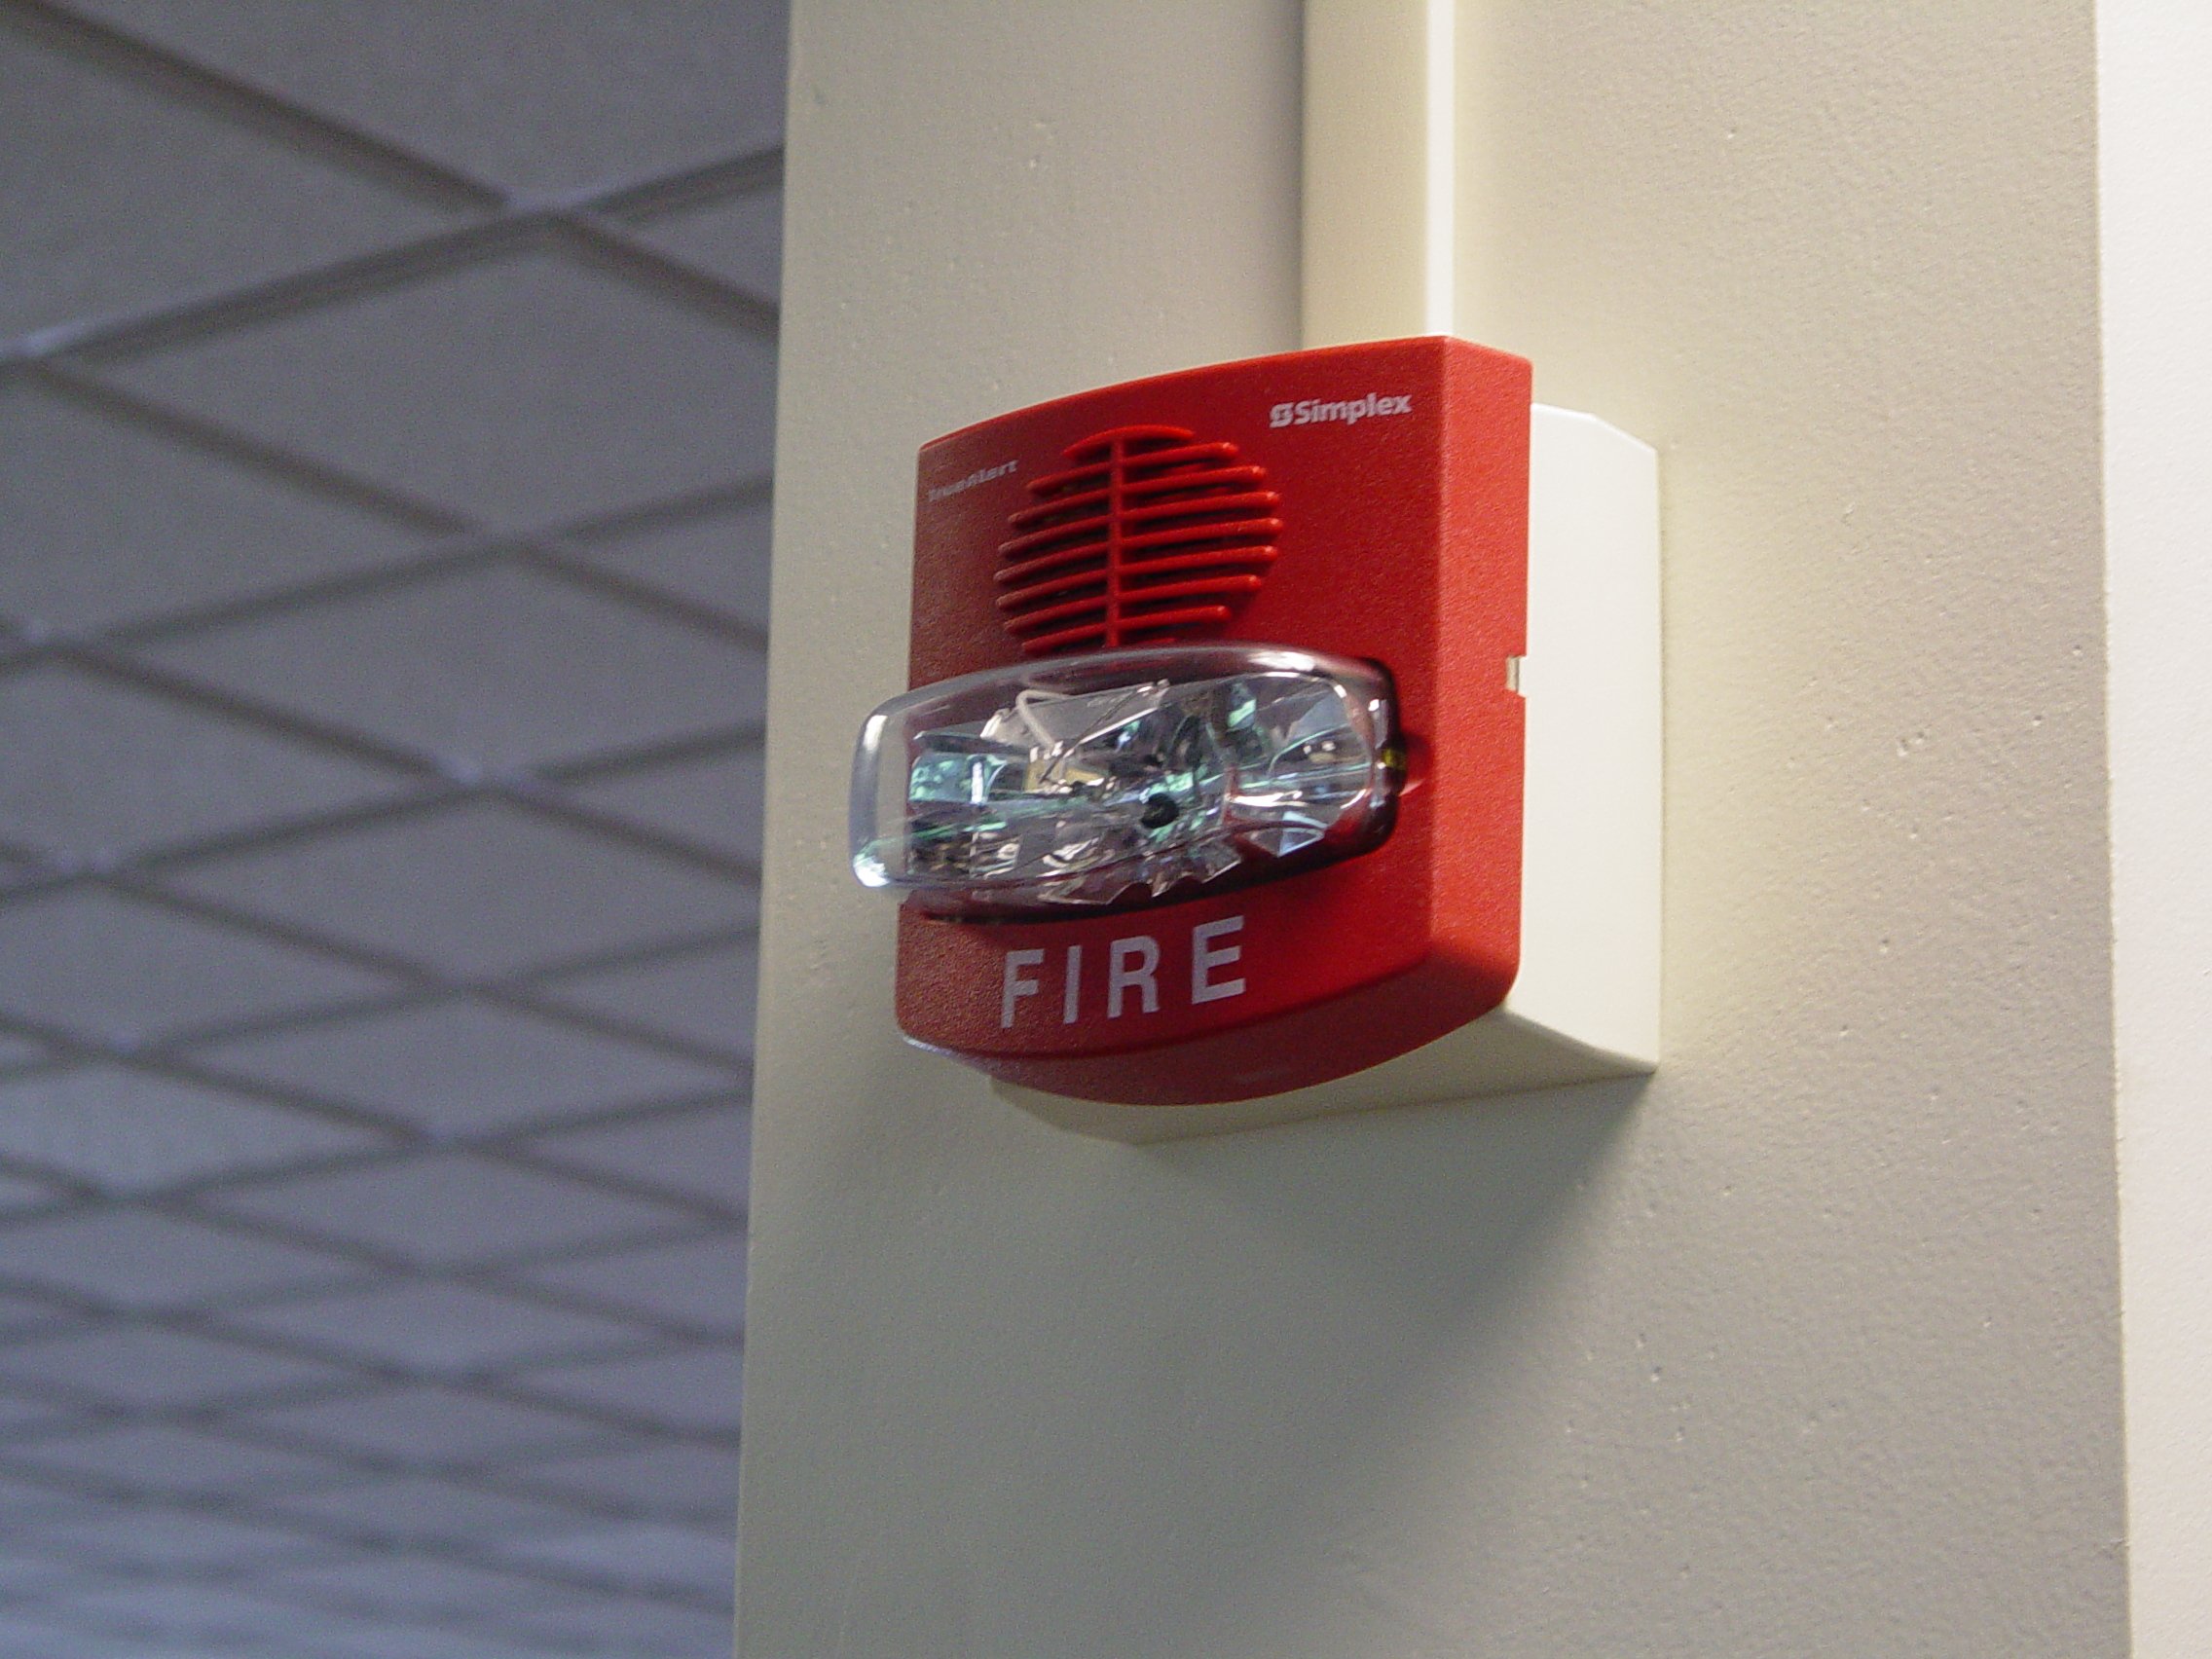 Пожарная сигнализация защитит. Simplex пожарная сигнализация. Пожарная сигнализация Аларм. Simplex Fire Alarm. Simplex пожарный датчик.